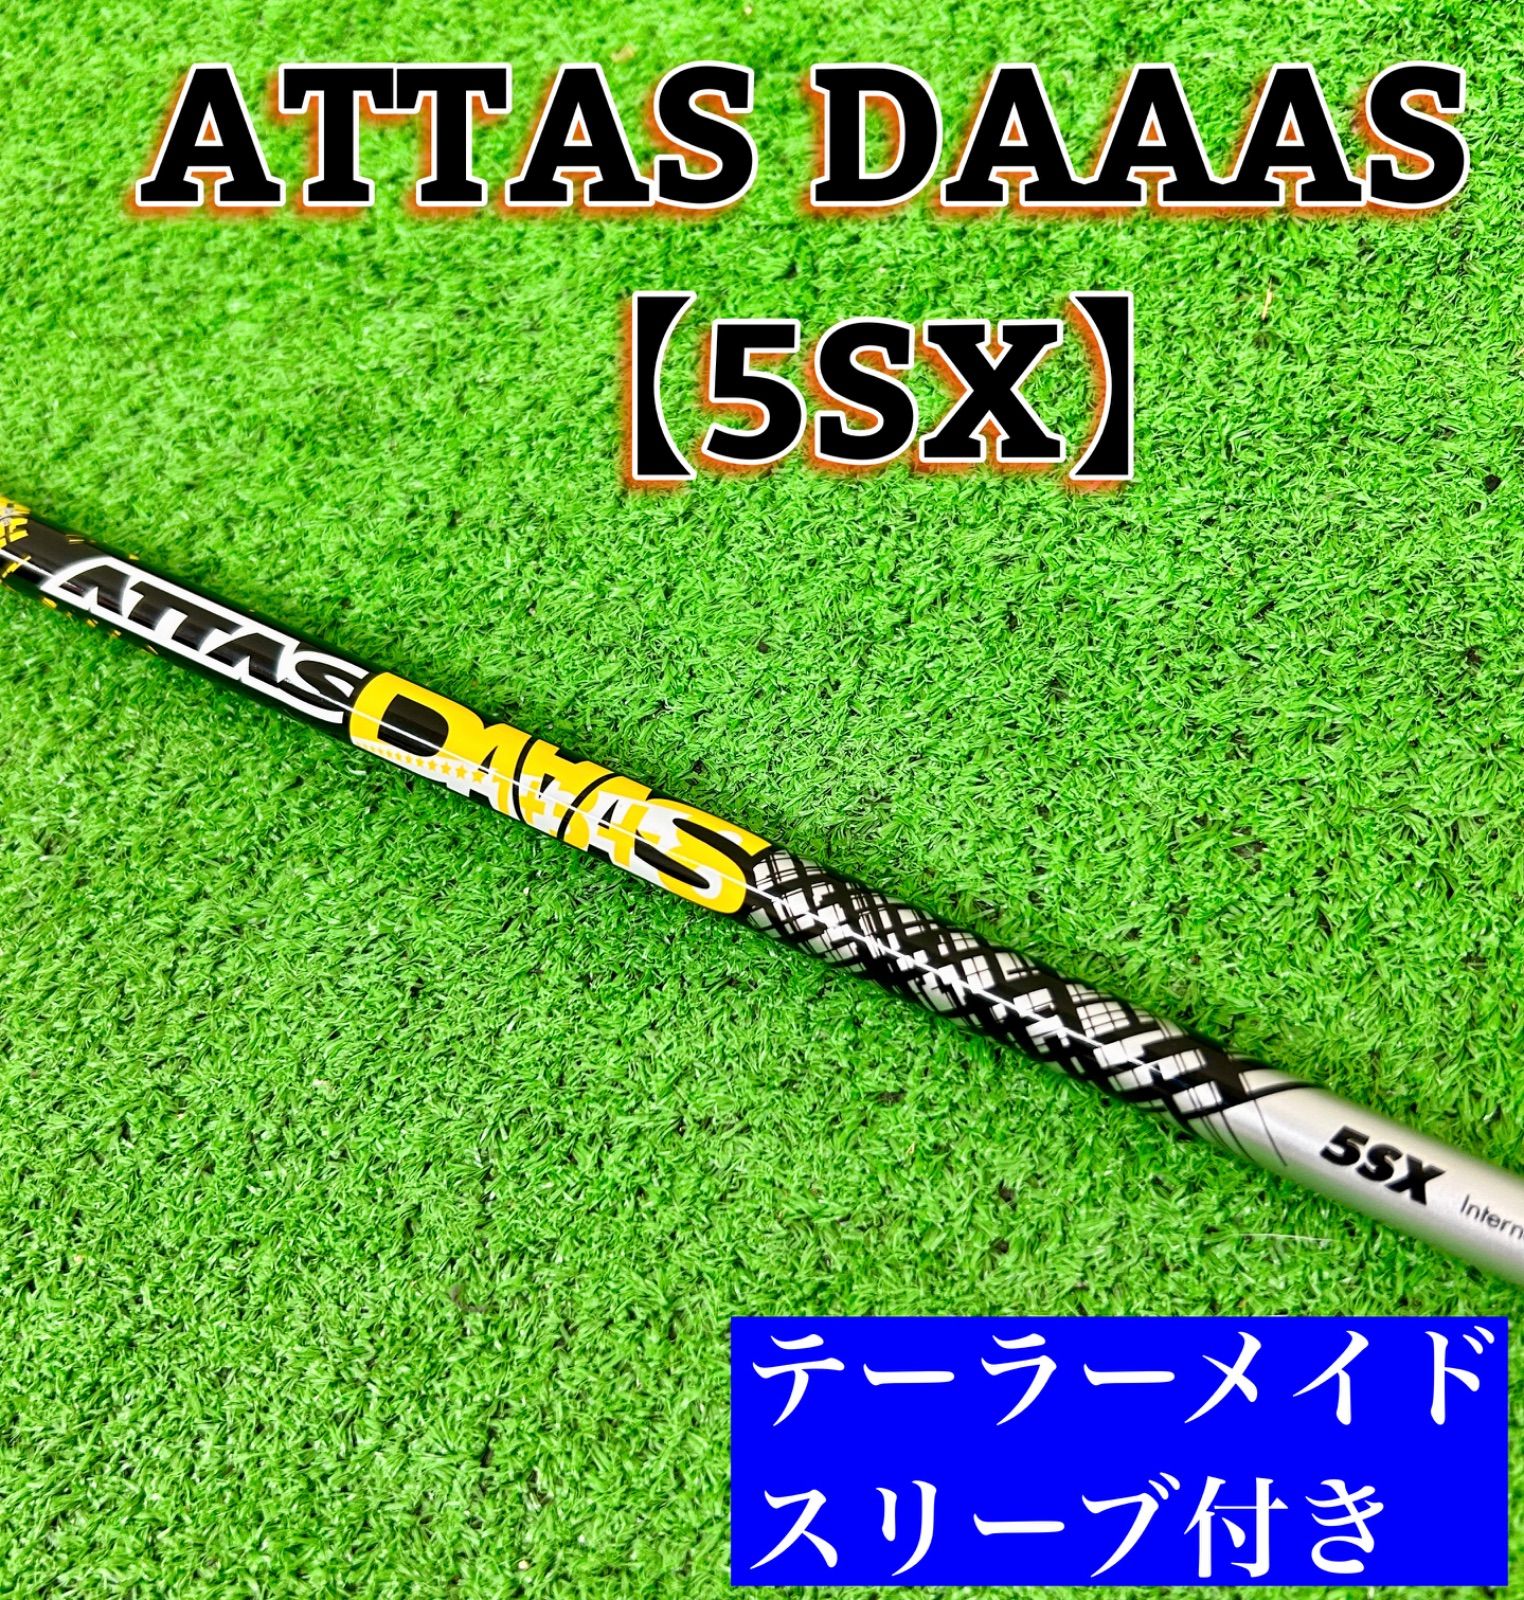 フレックスSXATTAS DAAAS 5SX テーラーメイド用スリーブ ドライバーシャフト